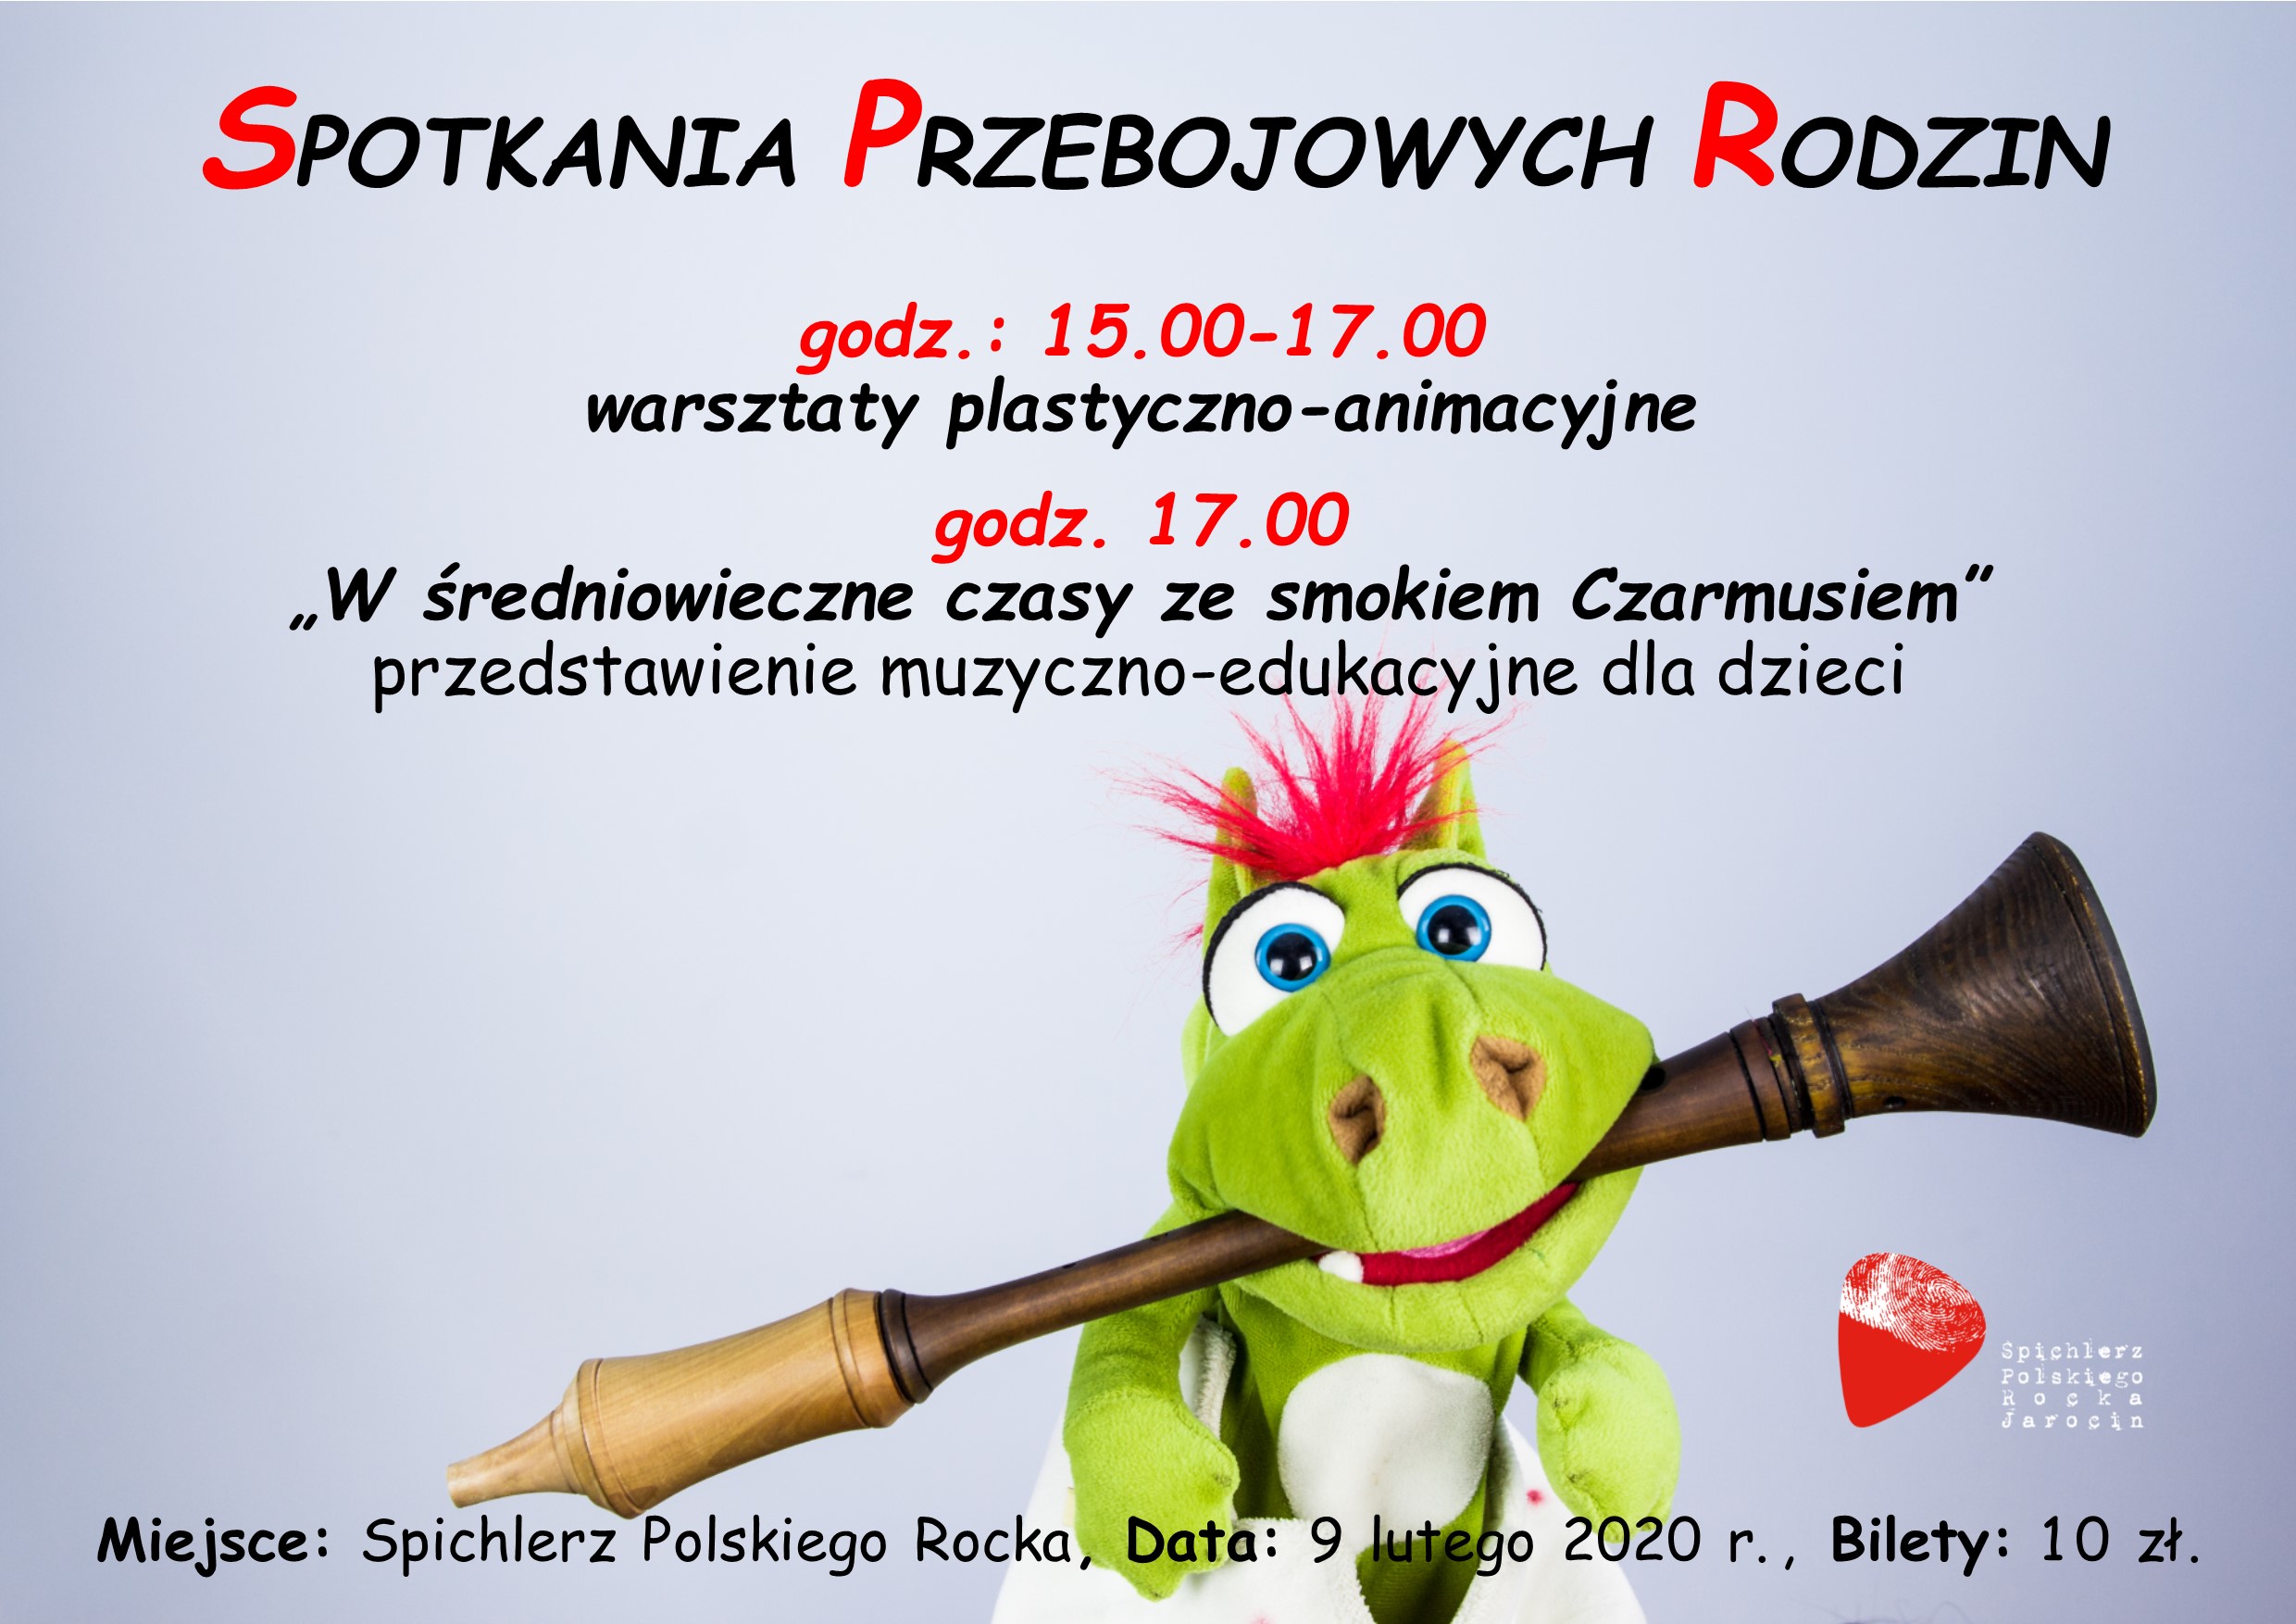 Spotkania Przebojowych Rodzin 2020 – odsłona 1 za 2 tygodnie (09.02.2020 r.). ZAPRASZAMY!!!